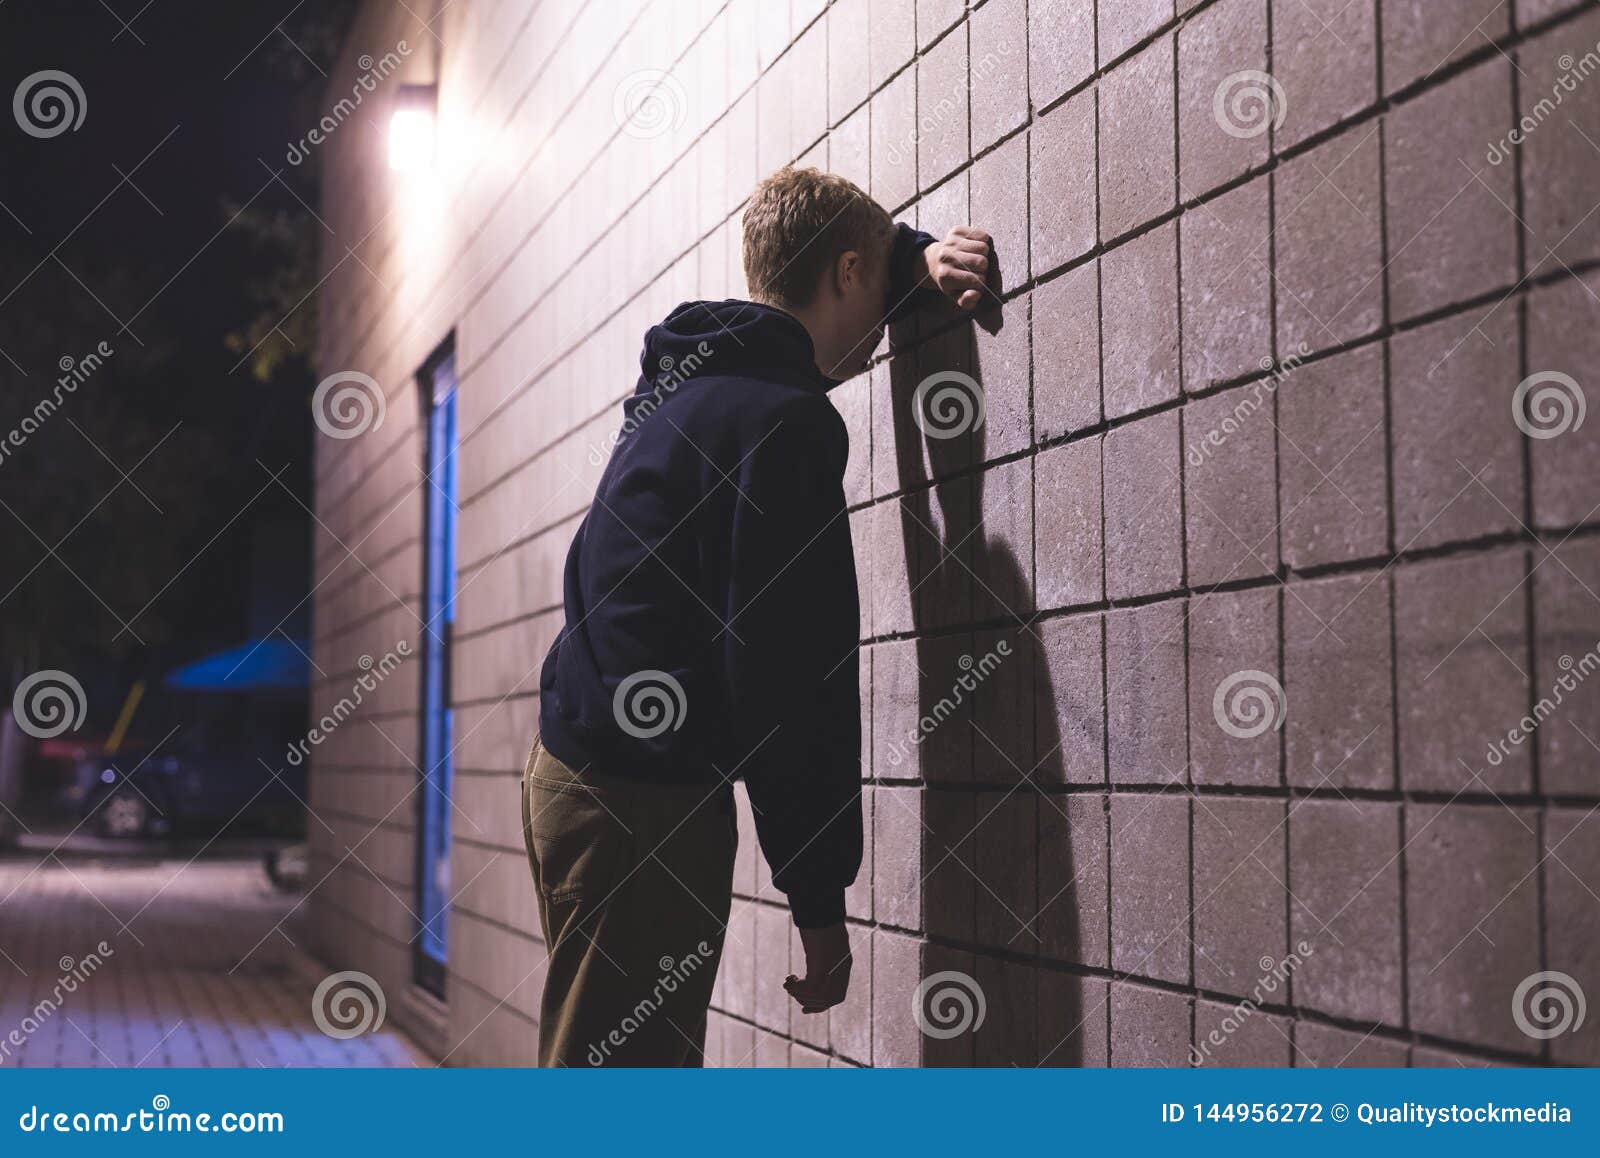 upset teenager standing in an alleyway.